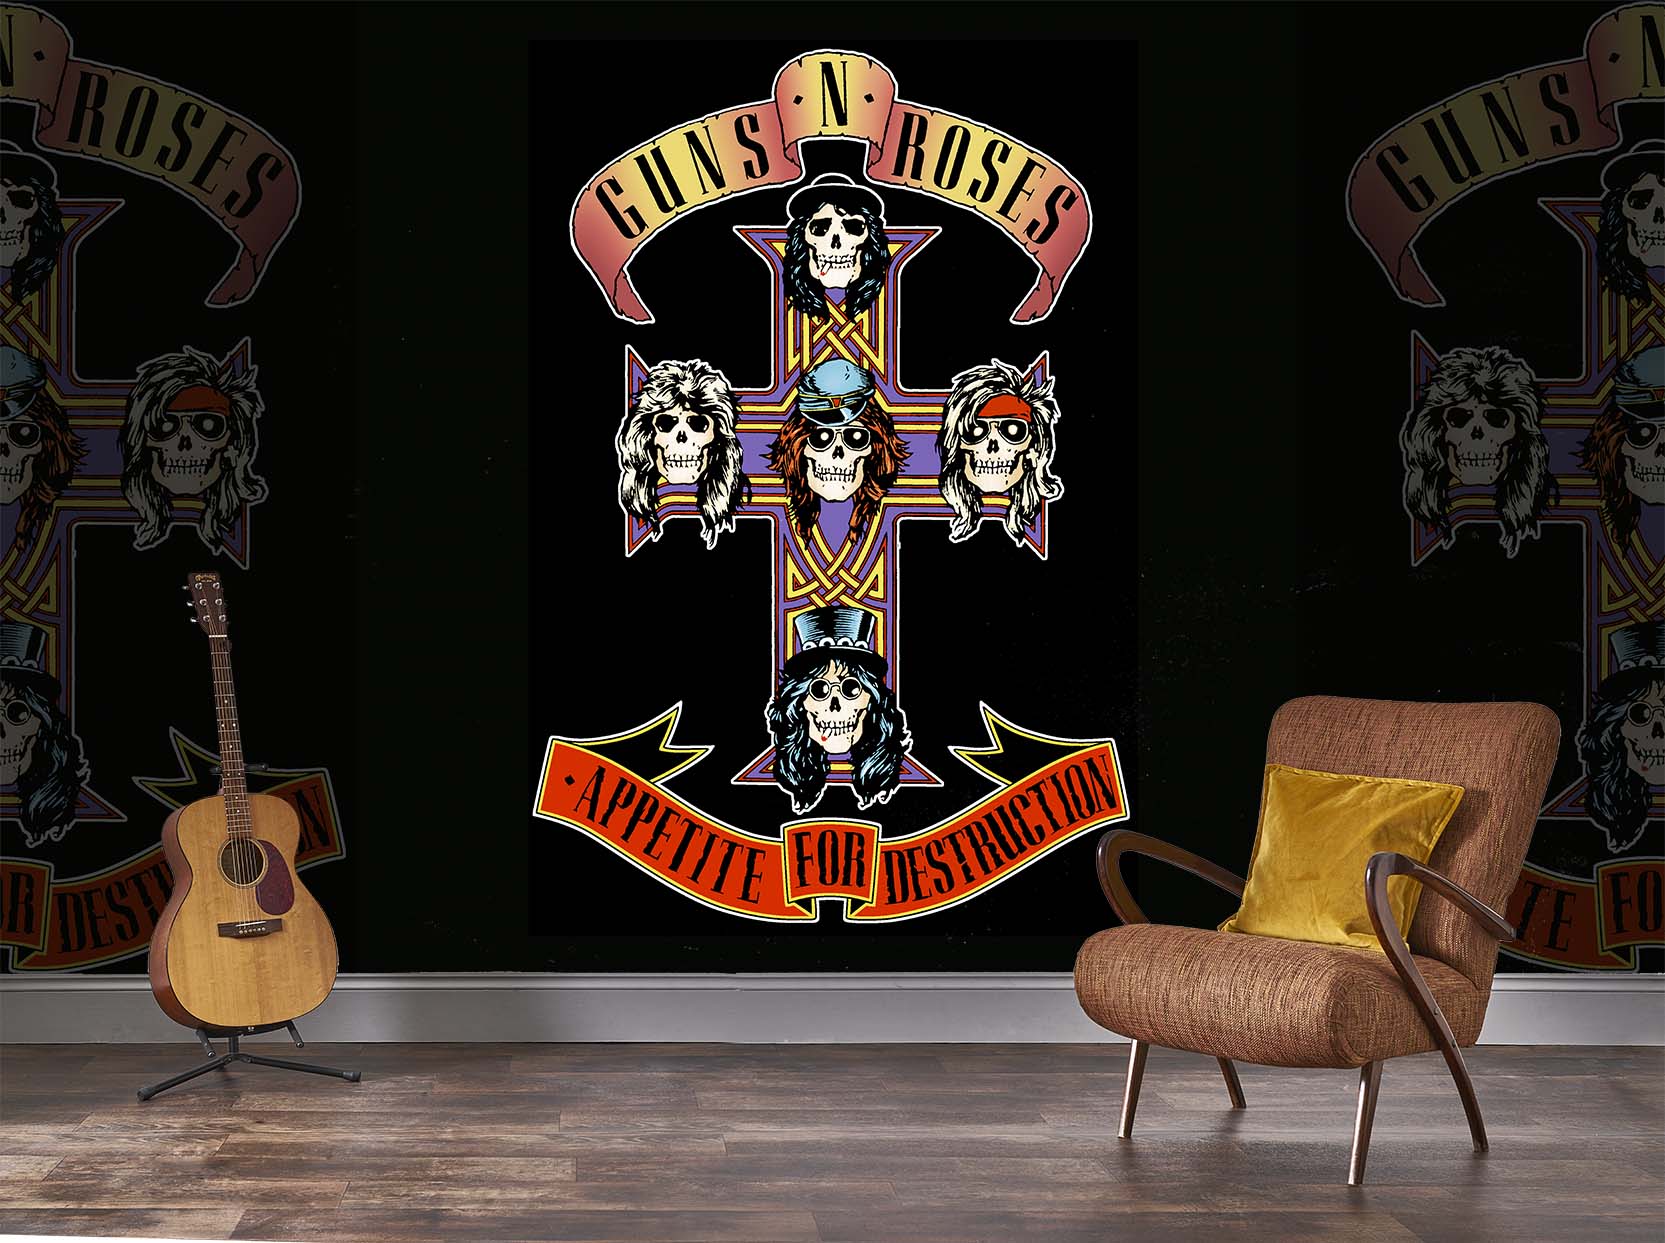 Heavy Metal Rock N Roll 2K wallpaper download